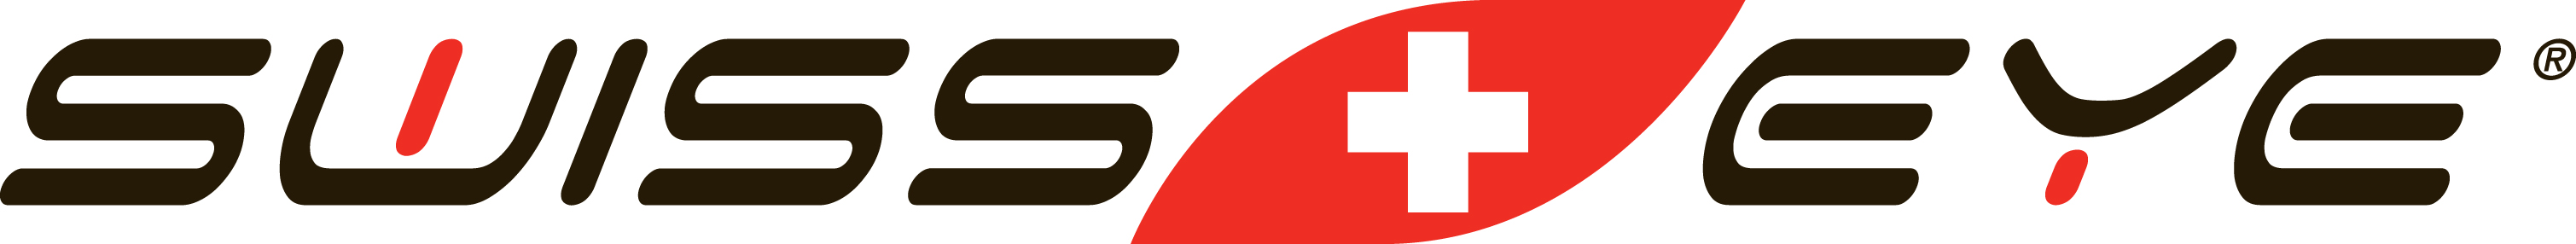 Swiss eye Logo photo - 1